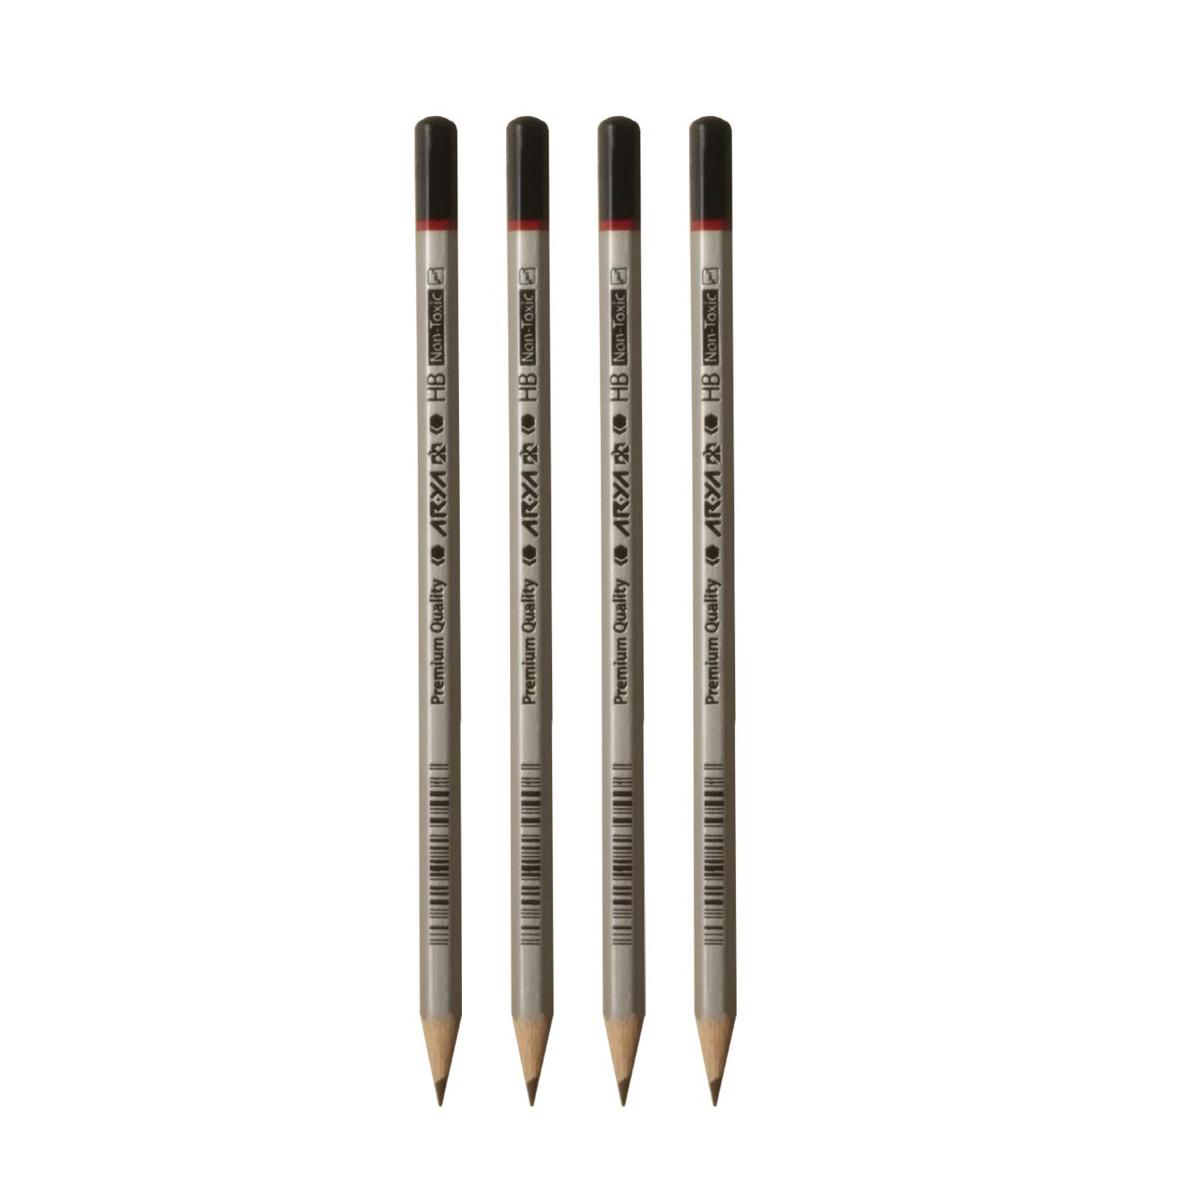 مداد مشکی آریا مدل Premium Quality کد 3050 بسته 4 عددی